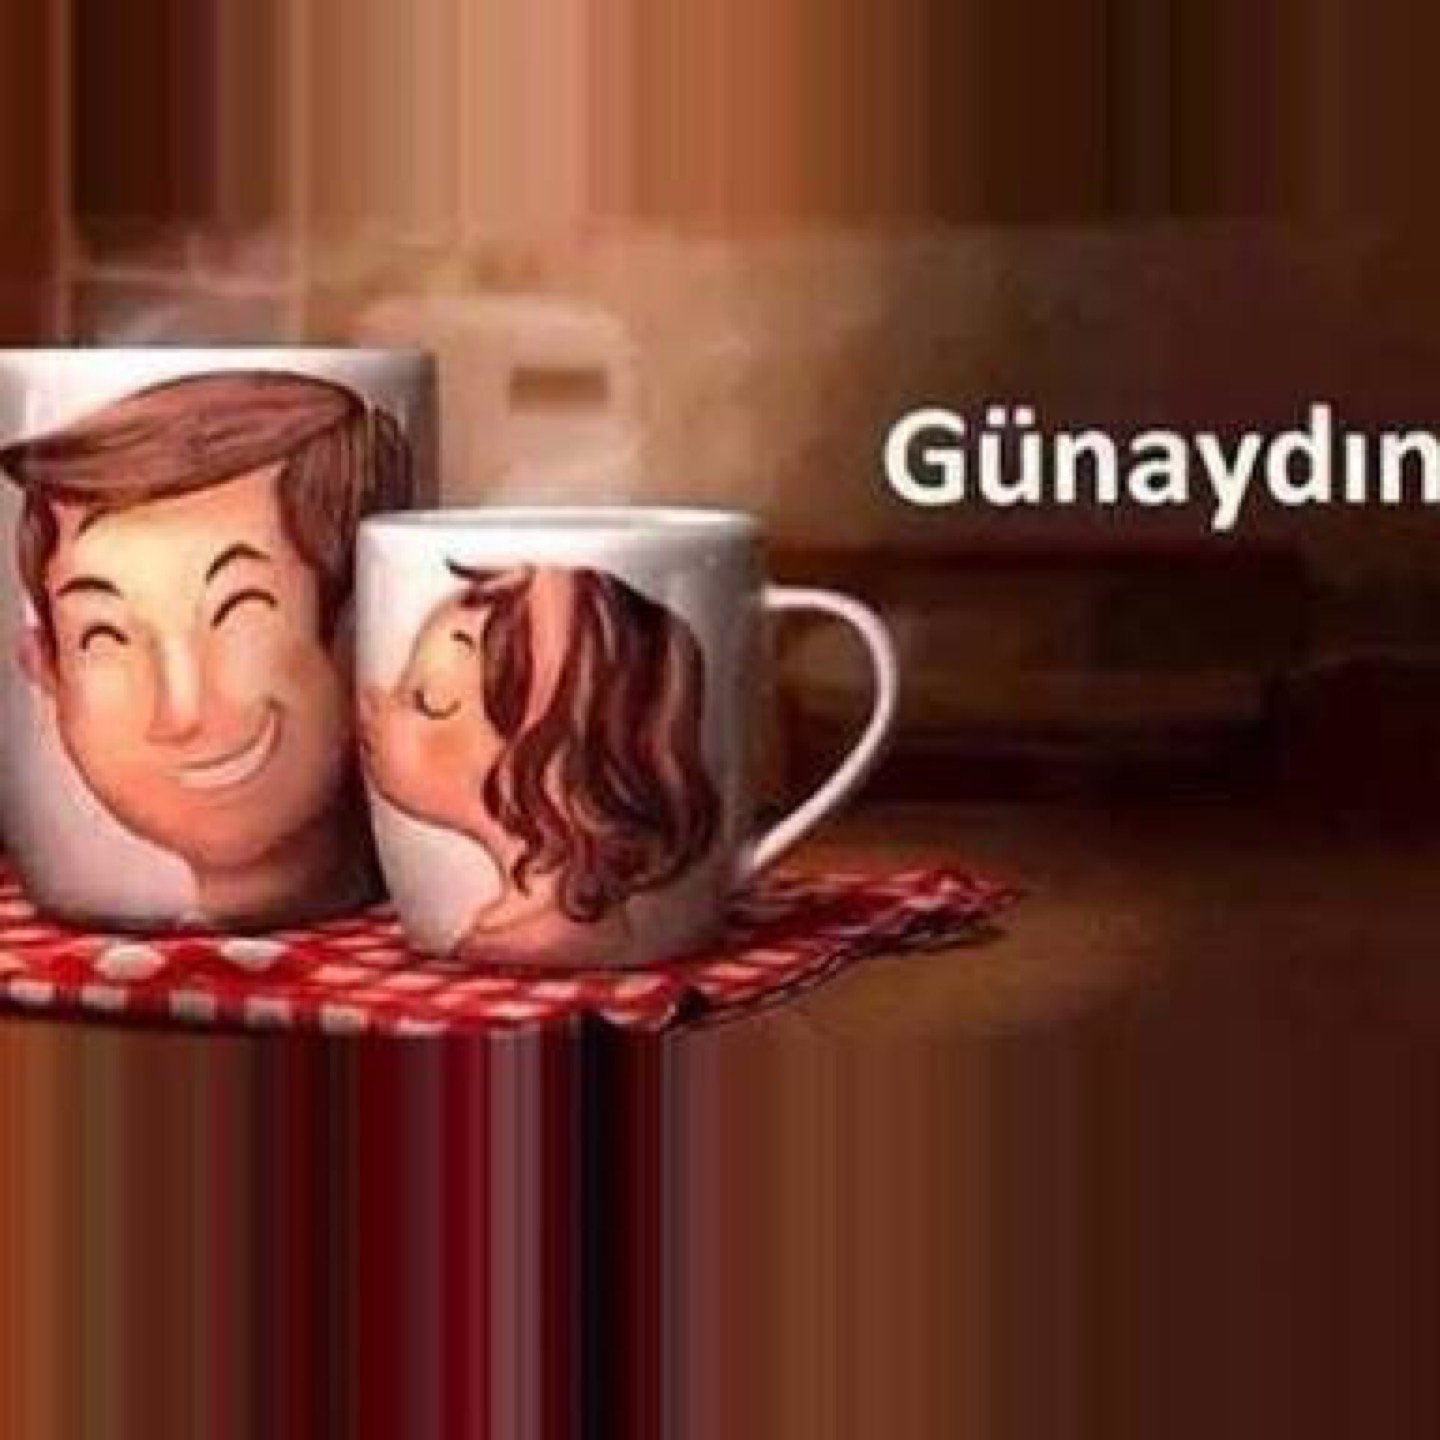 Доброе утро мужчине на турецком. Открытки Günaydin. Открытки с добрым утром на турецком языке мужчине. Доброе утро дорогой по турецки. Открытки с добрым утром на турецком.